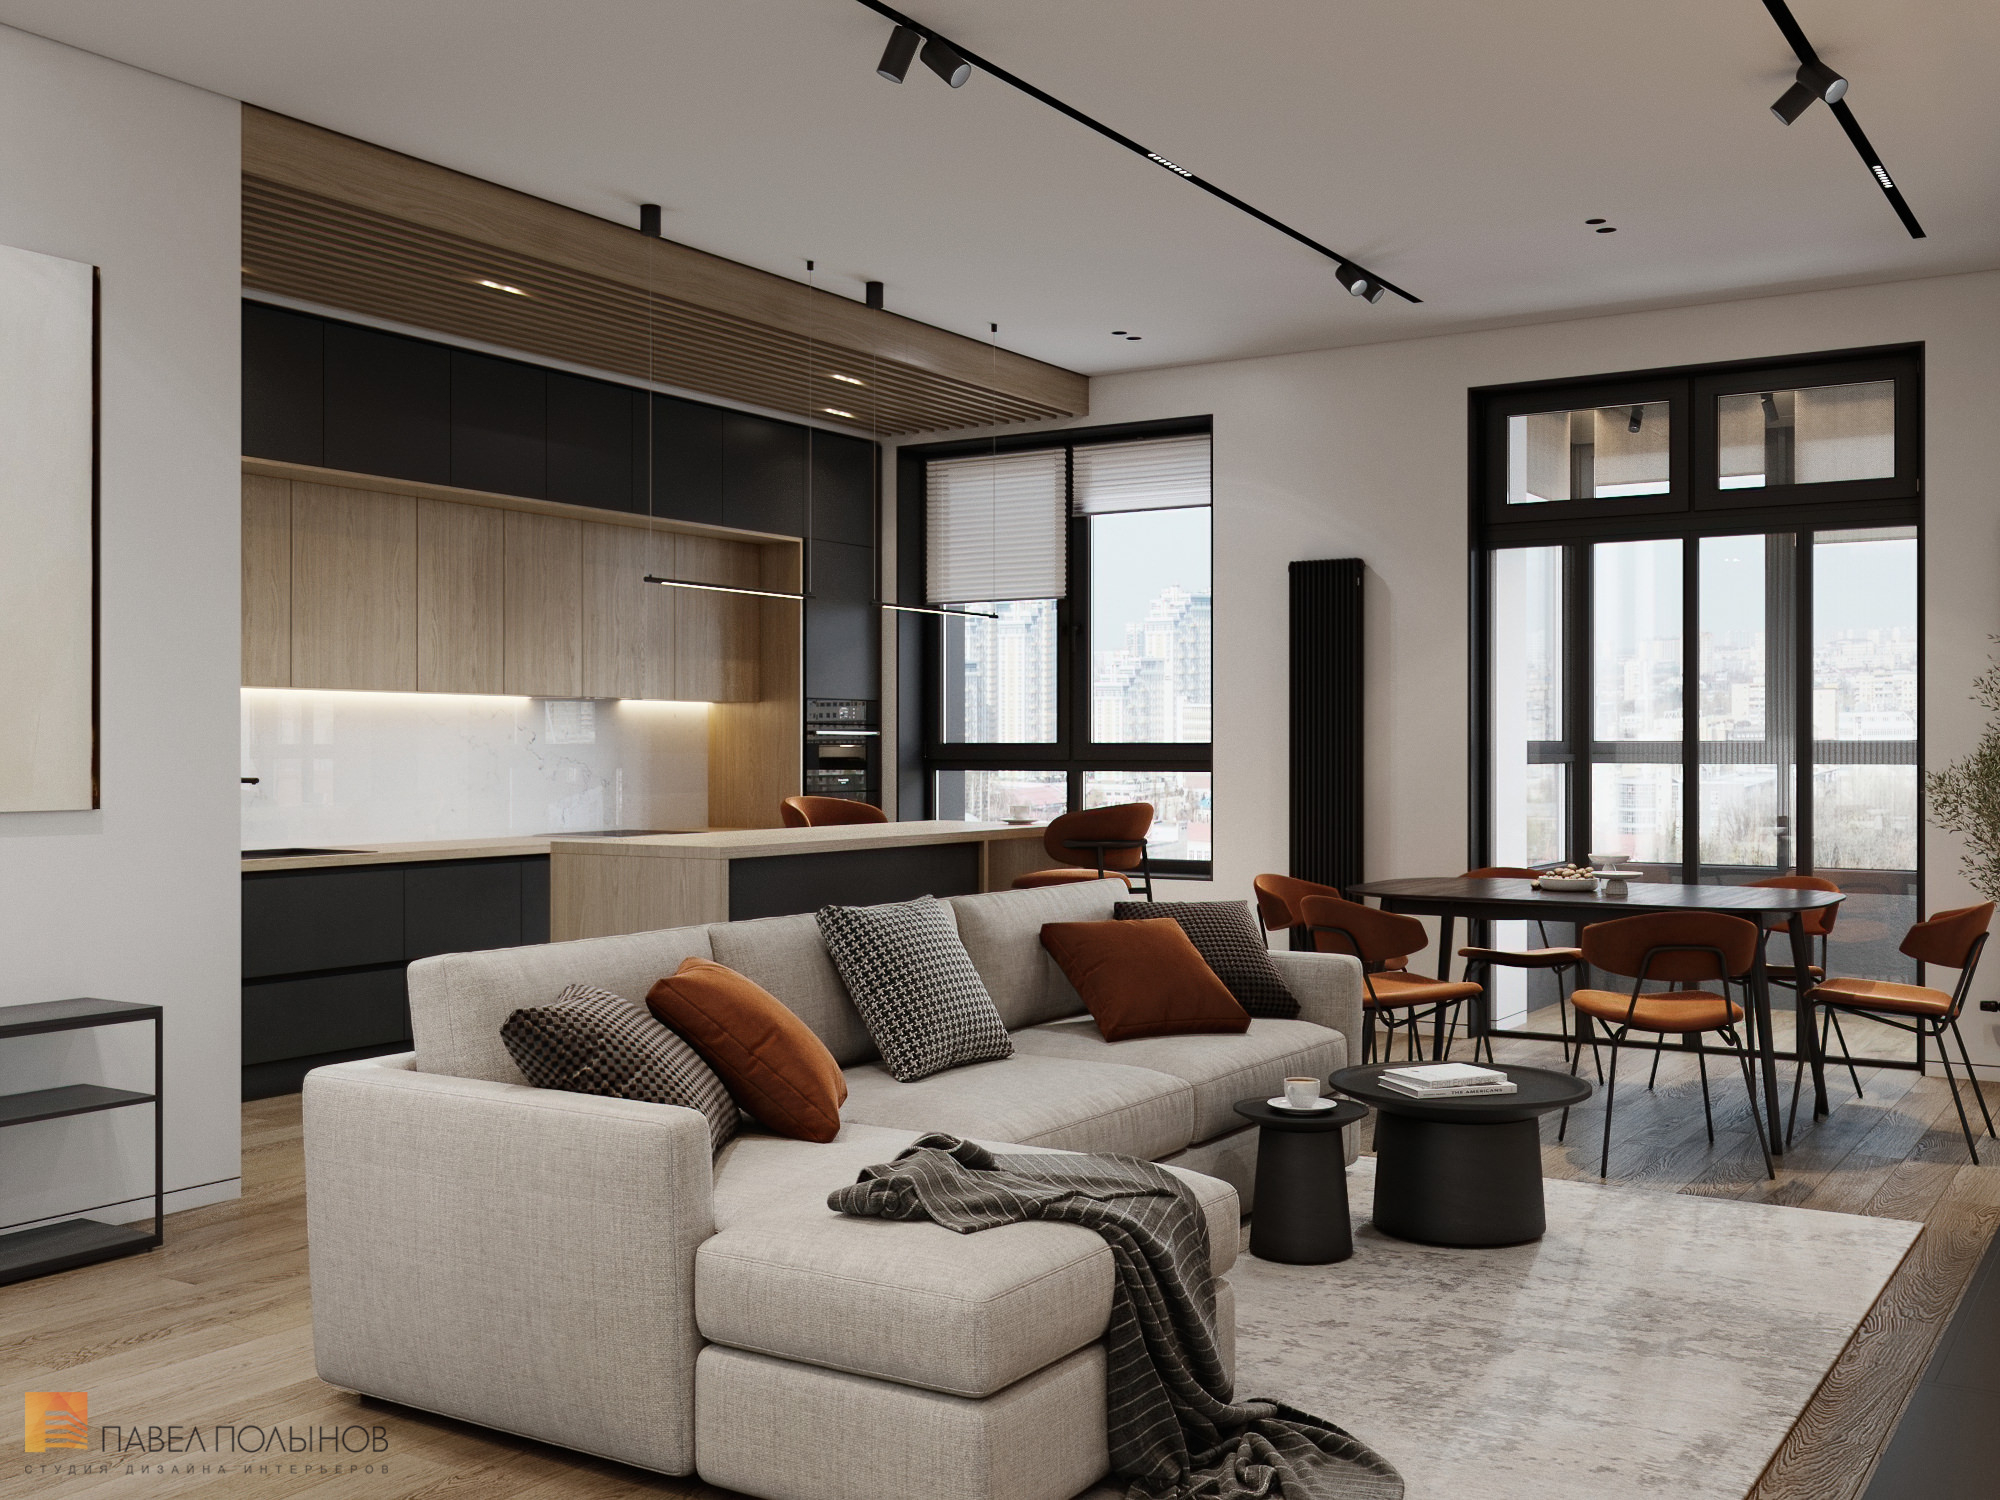 Фото кухня-гостиная из проекта «Дизайн интерьера квартиры в современном стиле, ЖК «Сердце столицы», 98 кв.м.»